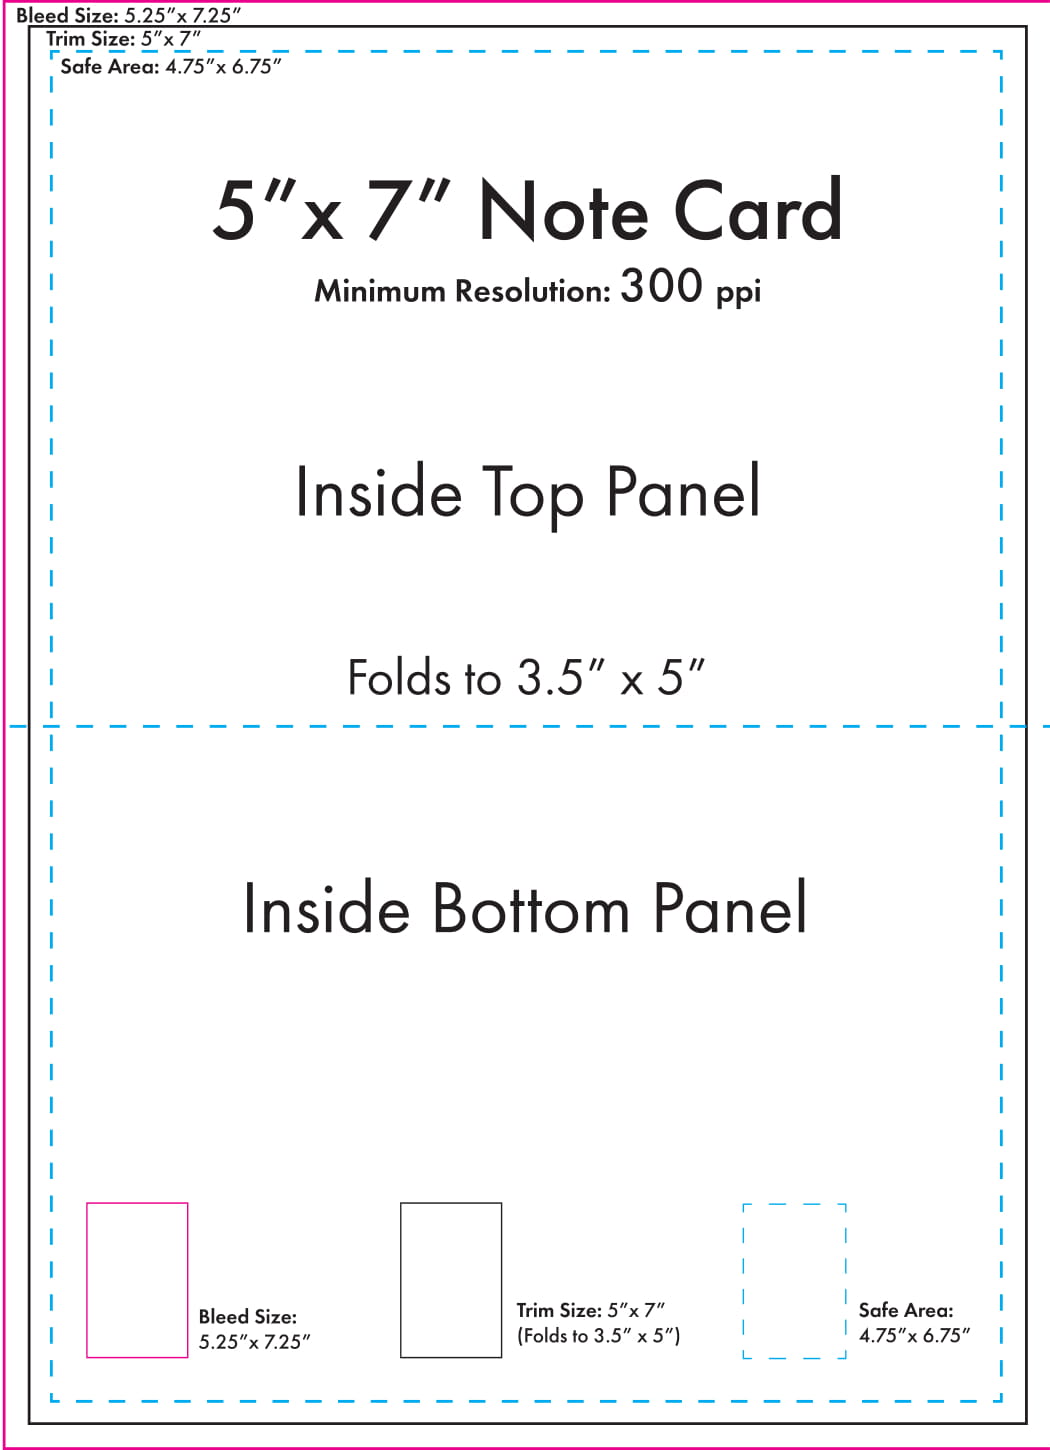 5 x 7 Note Card Template - U.S. Press